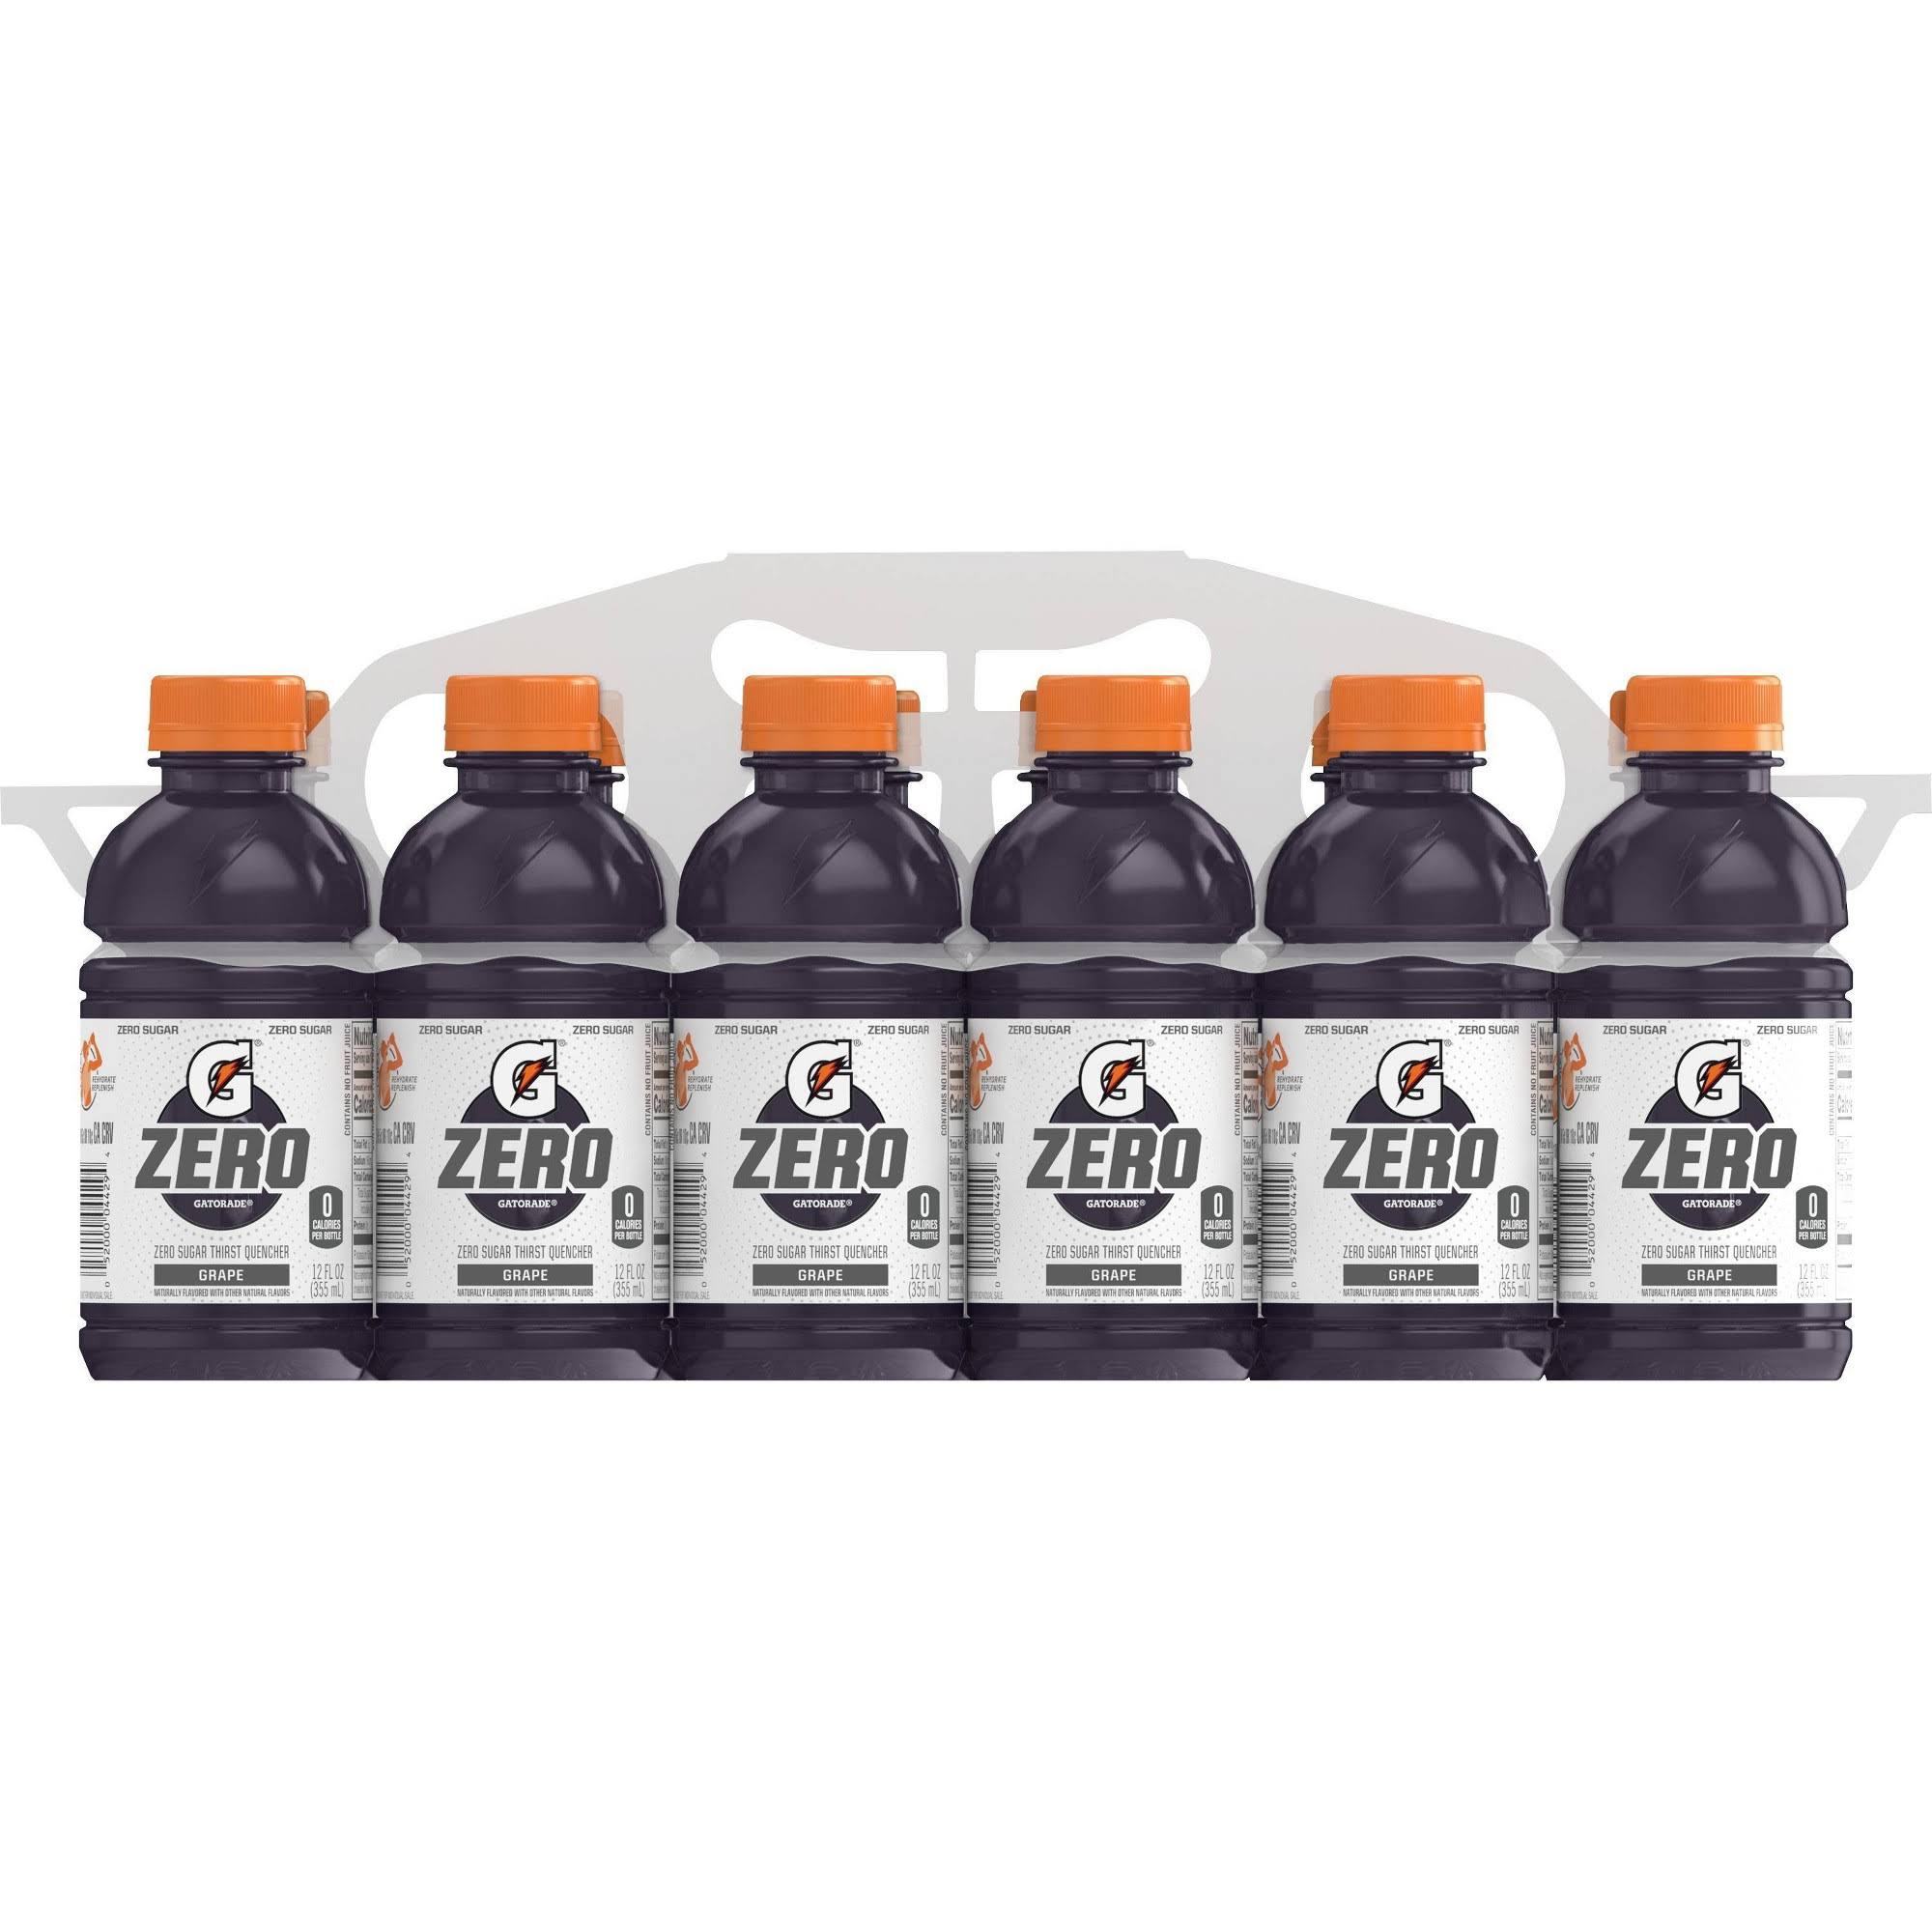 Gatorade Zero Thirst Quencher, Zero Sugar, Grape - 12 pack, 12 fl oz bottles